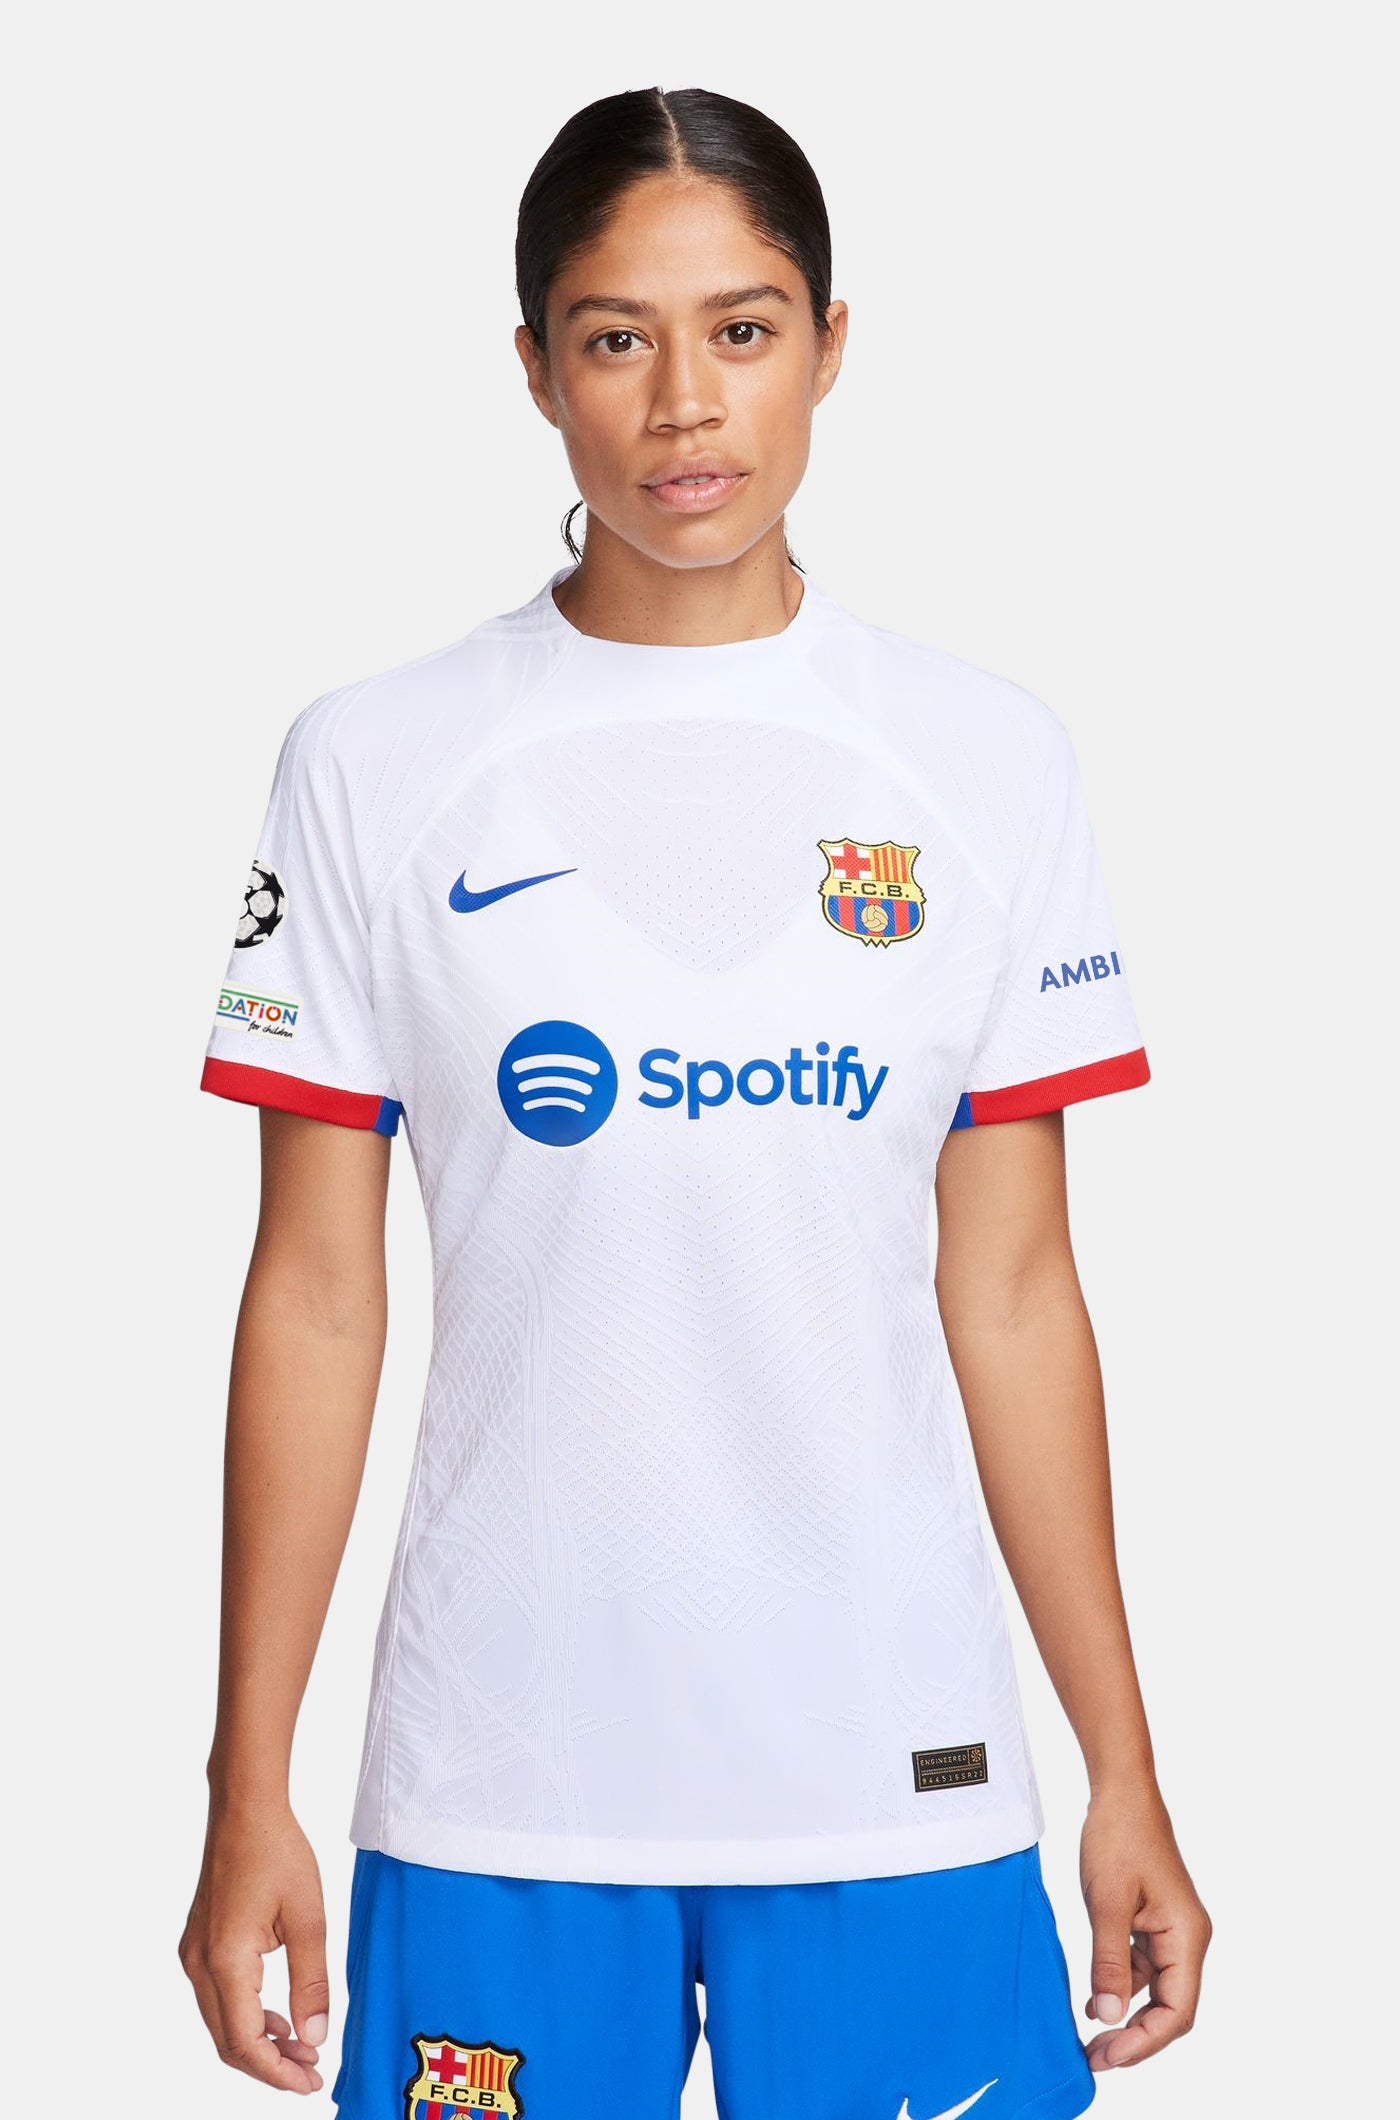 UCL FC Barcelona Away Shirt 23/24 Player’s Edition - Women  - FERRAN